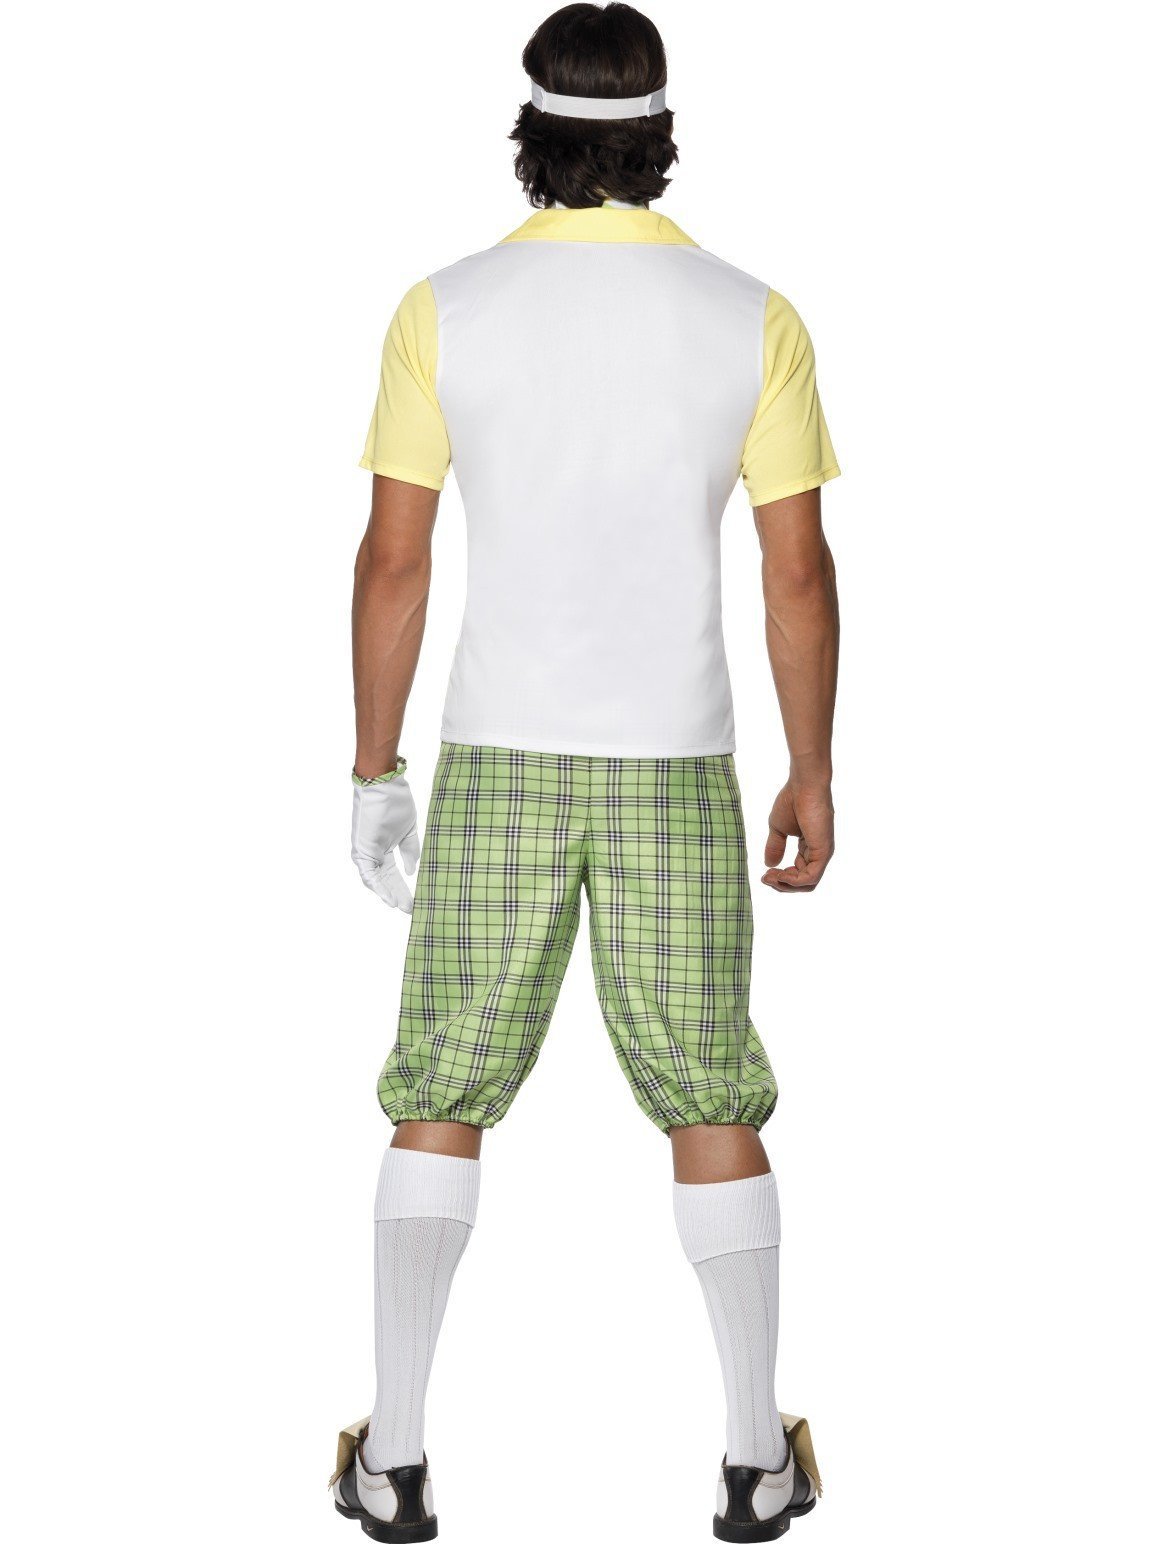 Pub Golf Outfits - Fancy dress ideas for pub golf